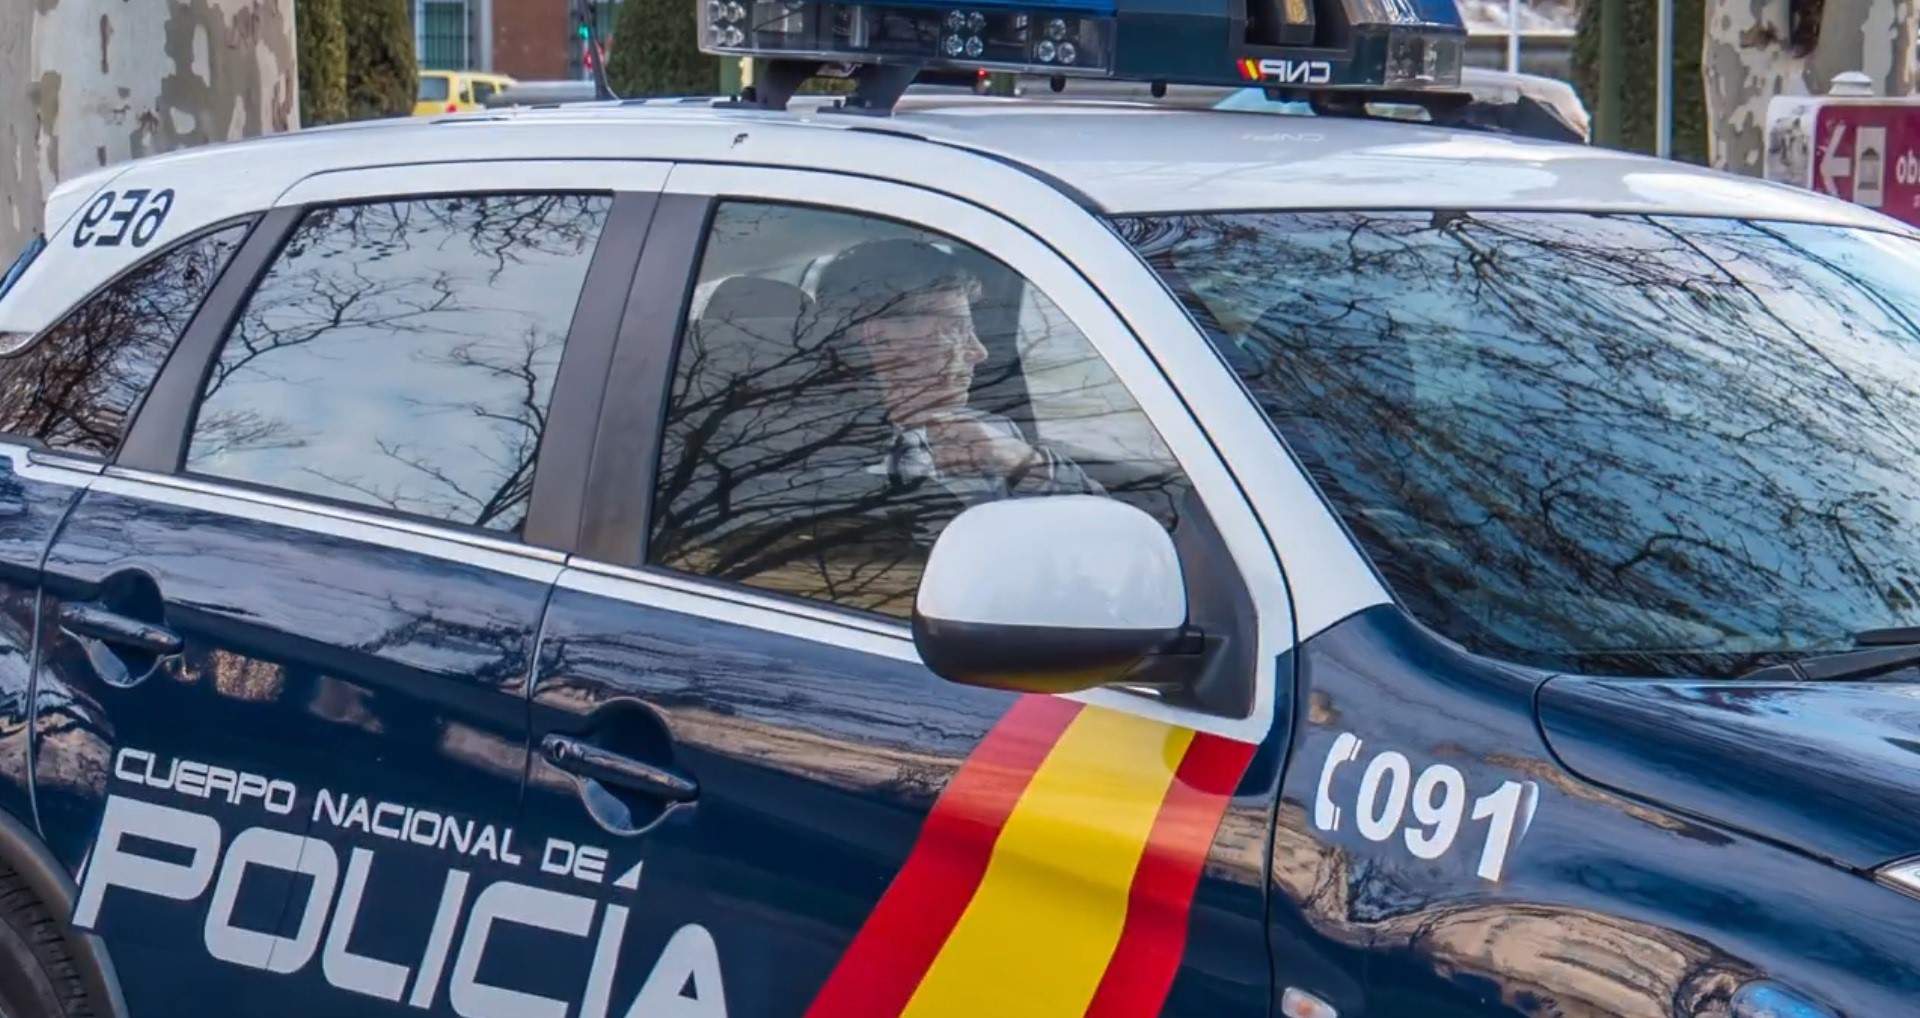 Ciudadanos sienta a Puigdemont dentro de un coche de la policía española para el 12-M